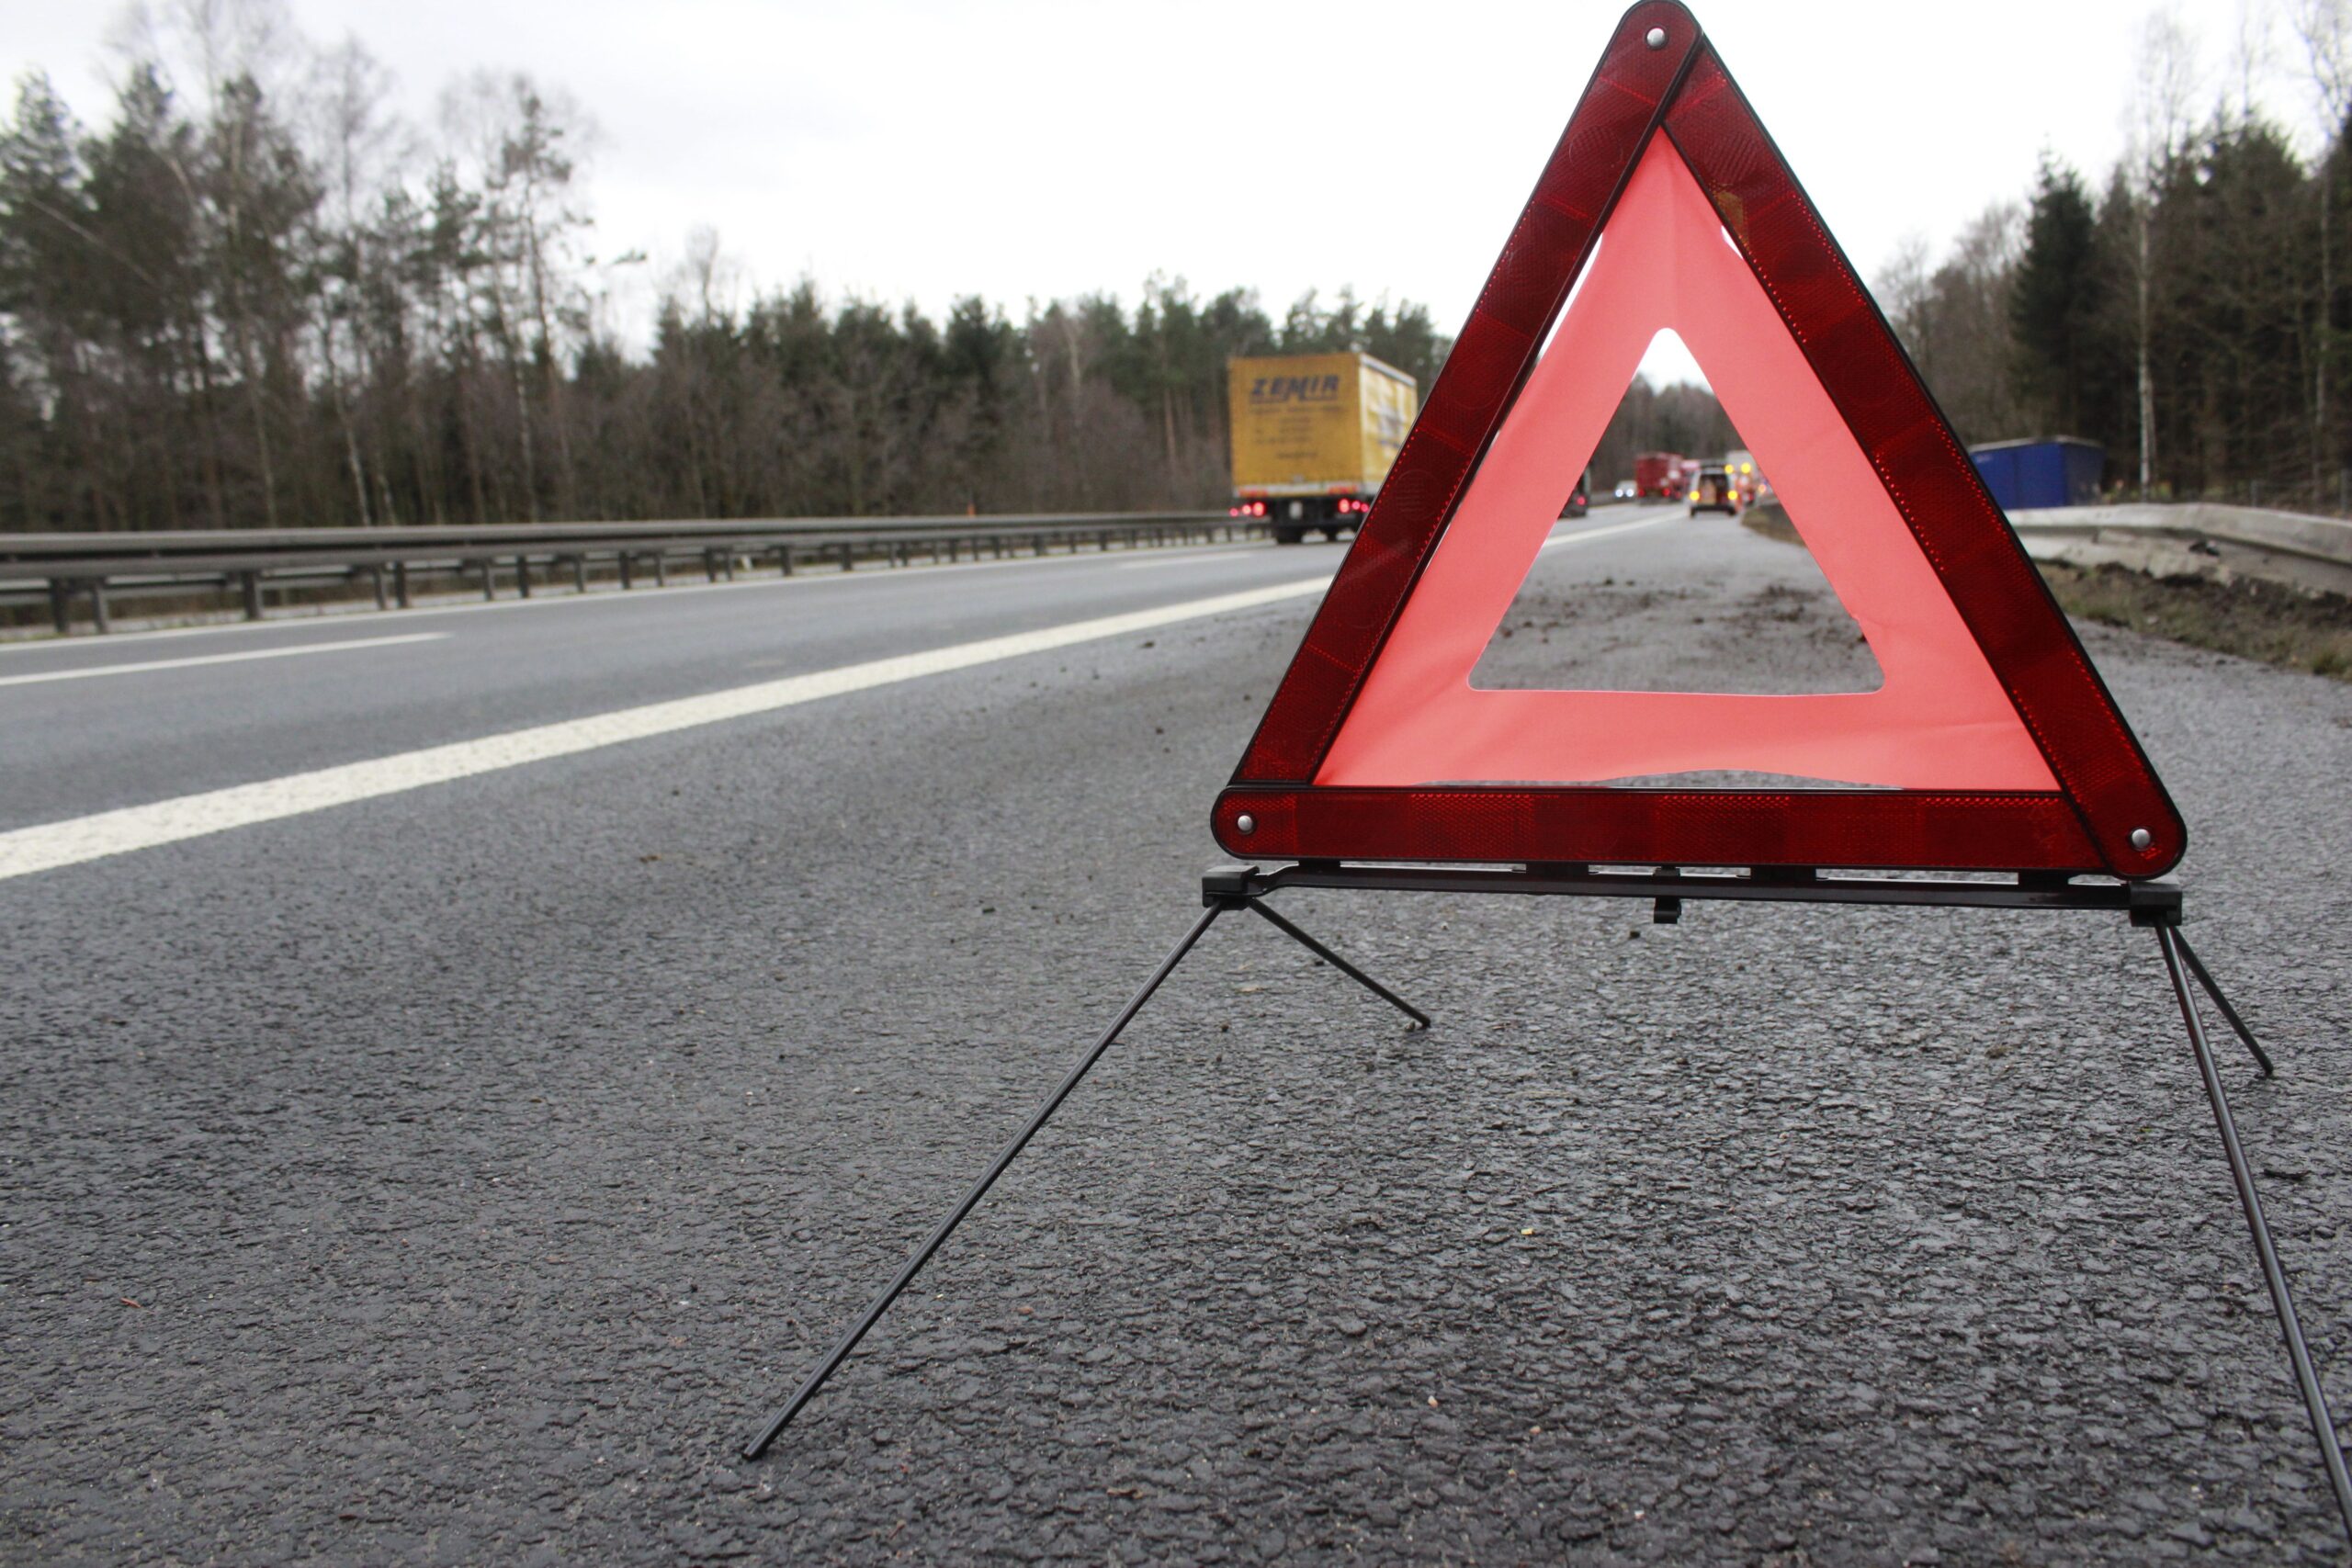 Tragiczny wypadek w powiecie gnieźnieńskim, droga zablokowana, na miejsce leci śmigłowiec LPR